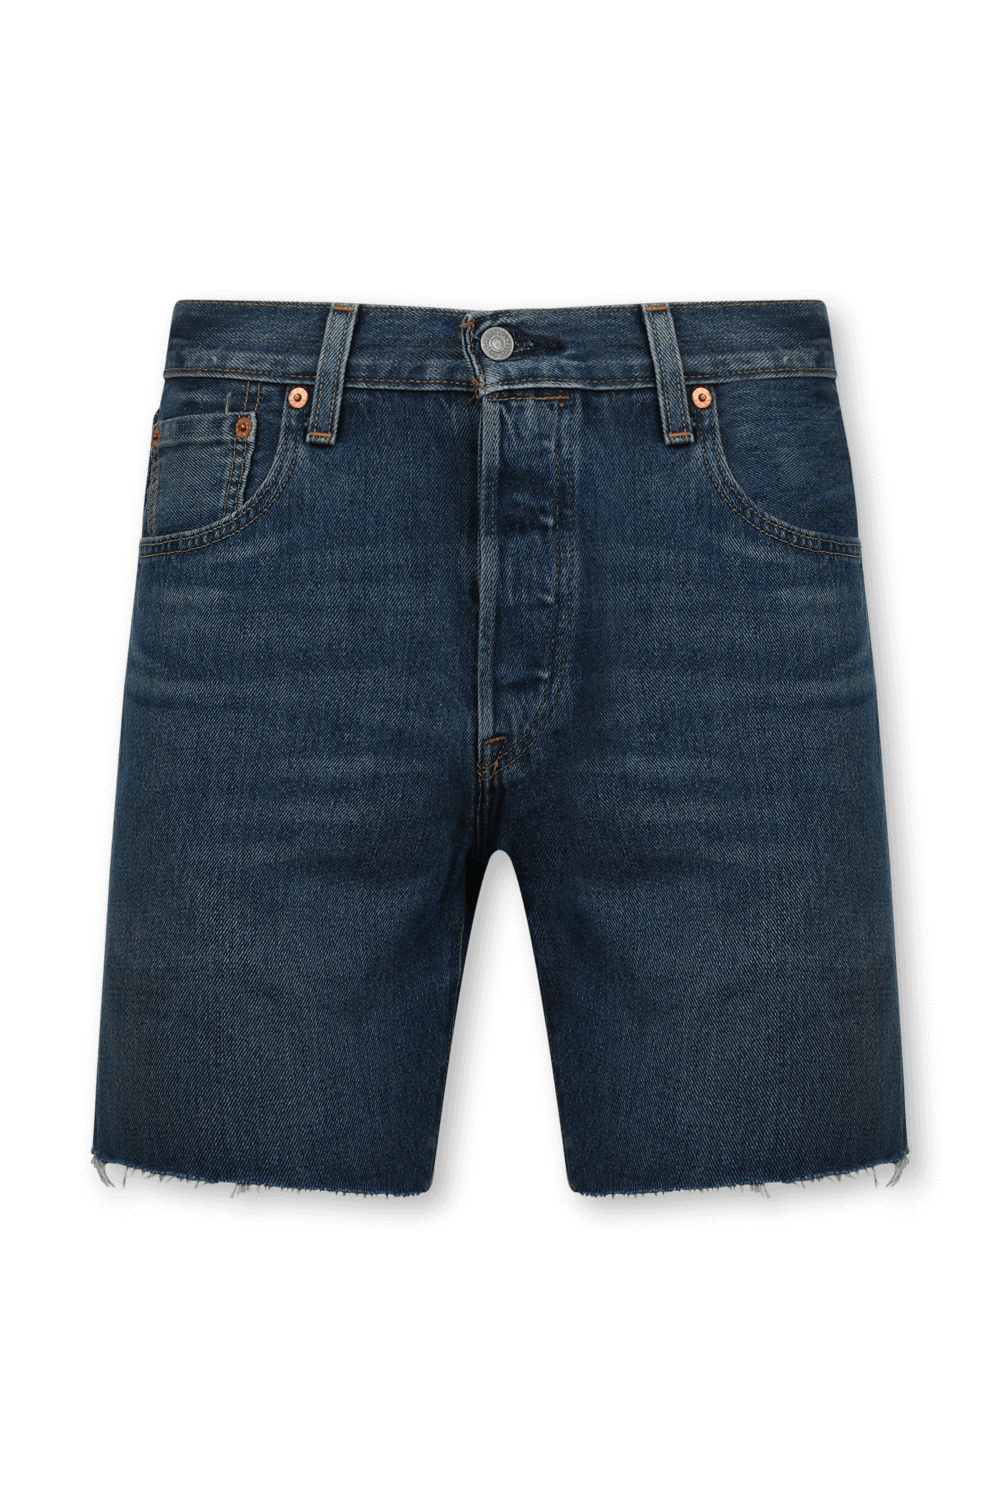 מכנסי ג'ינס קצרים 501 93 LEVI`S